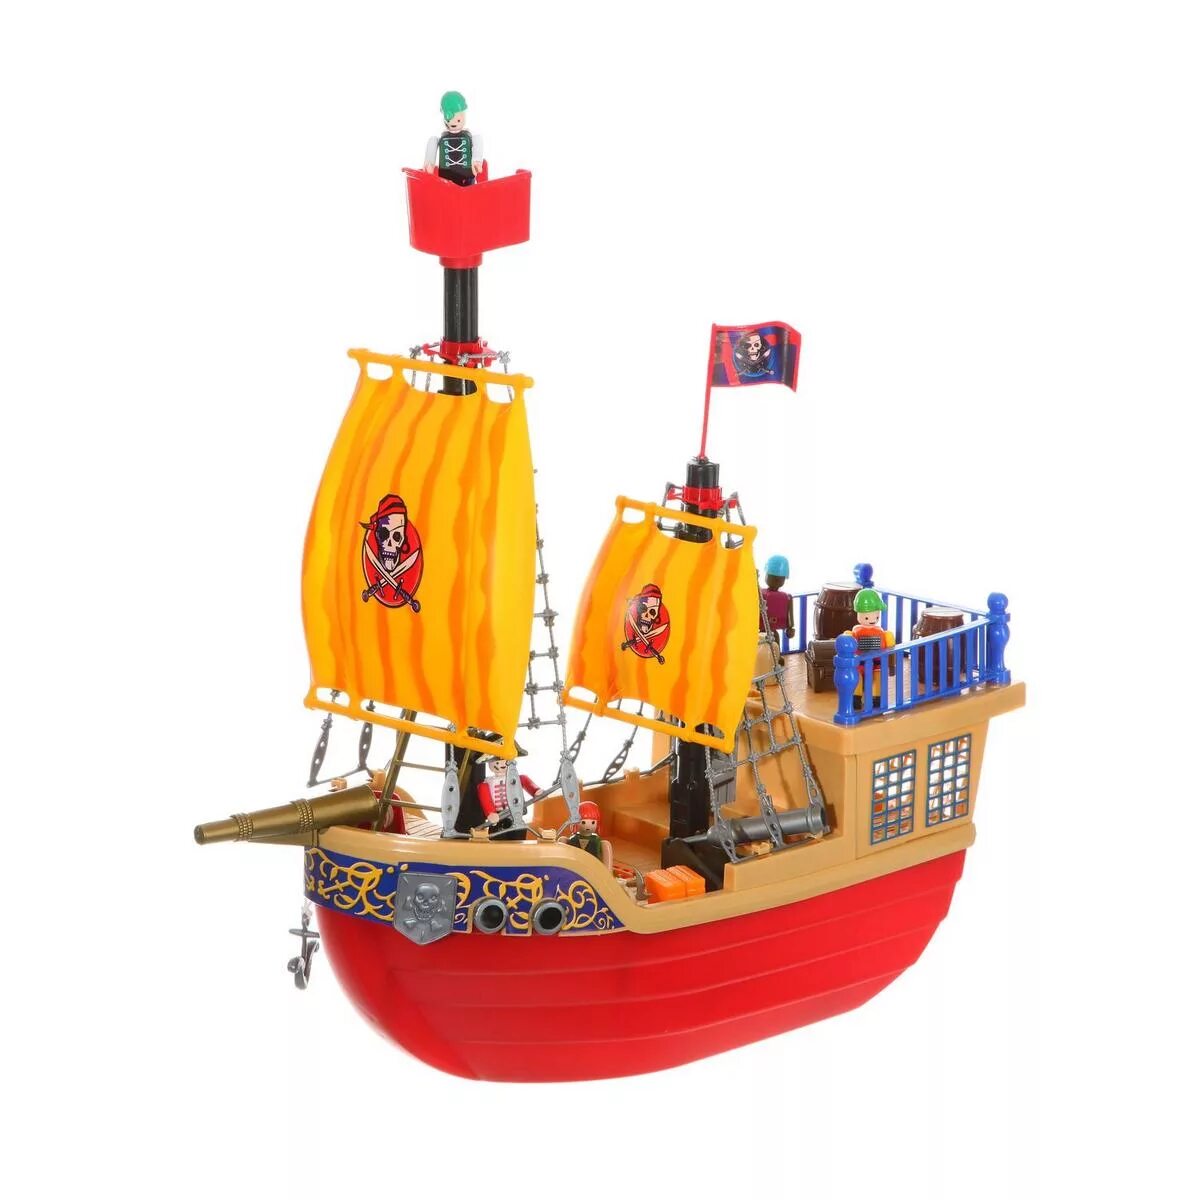 Игровой набор Shenzhen Toys пиратский корабль, 50828e. Игровой набор Pirat ships. Ship Series Pirates набор.